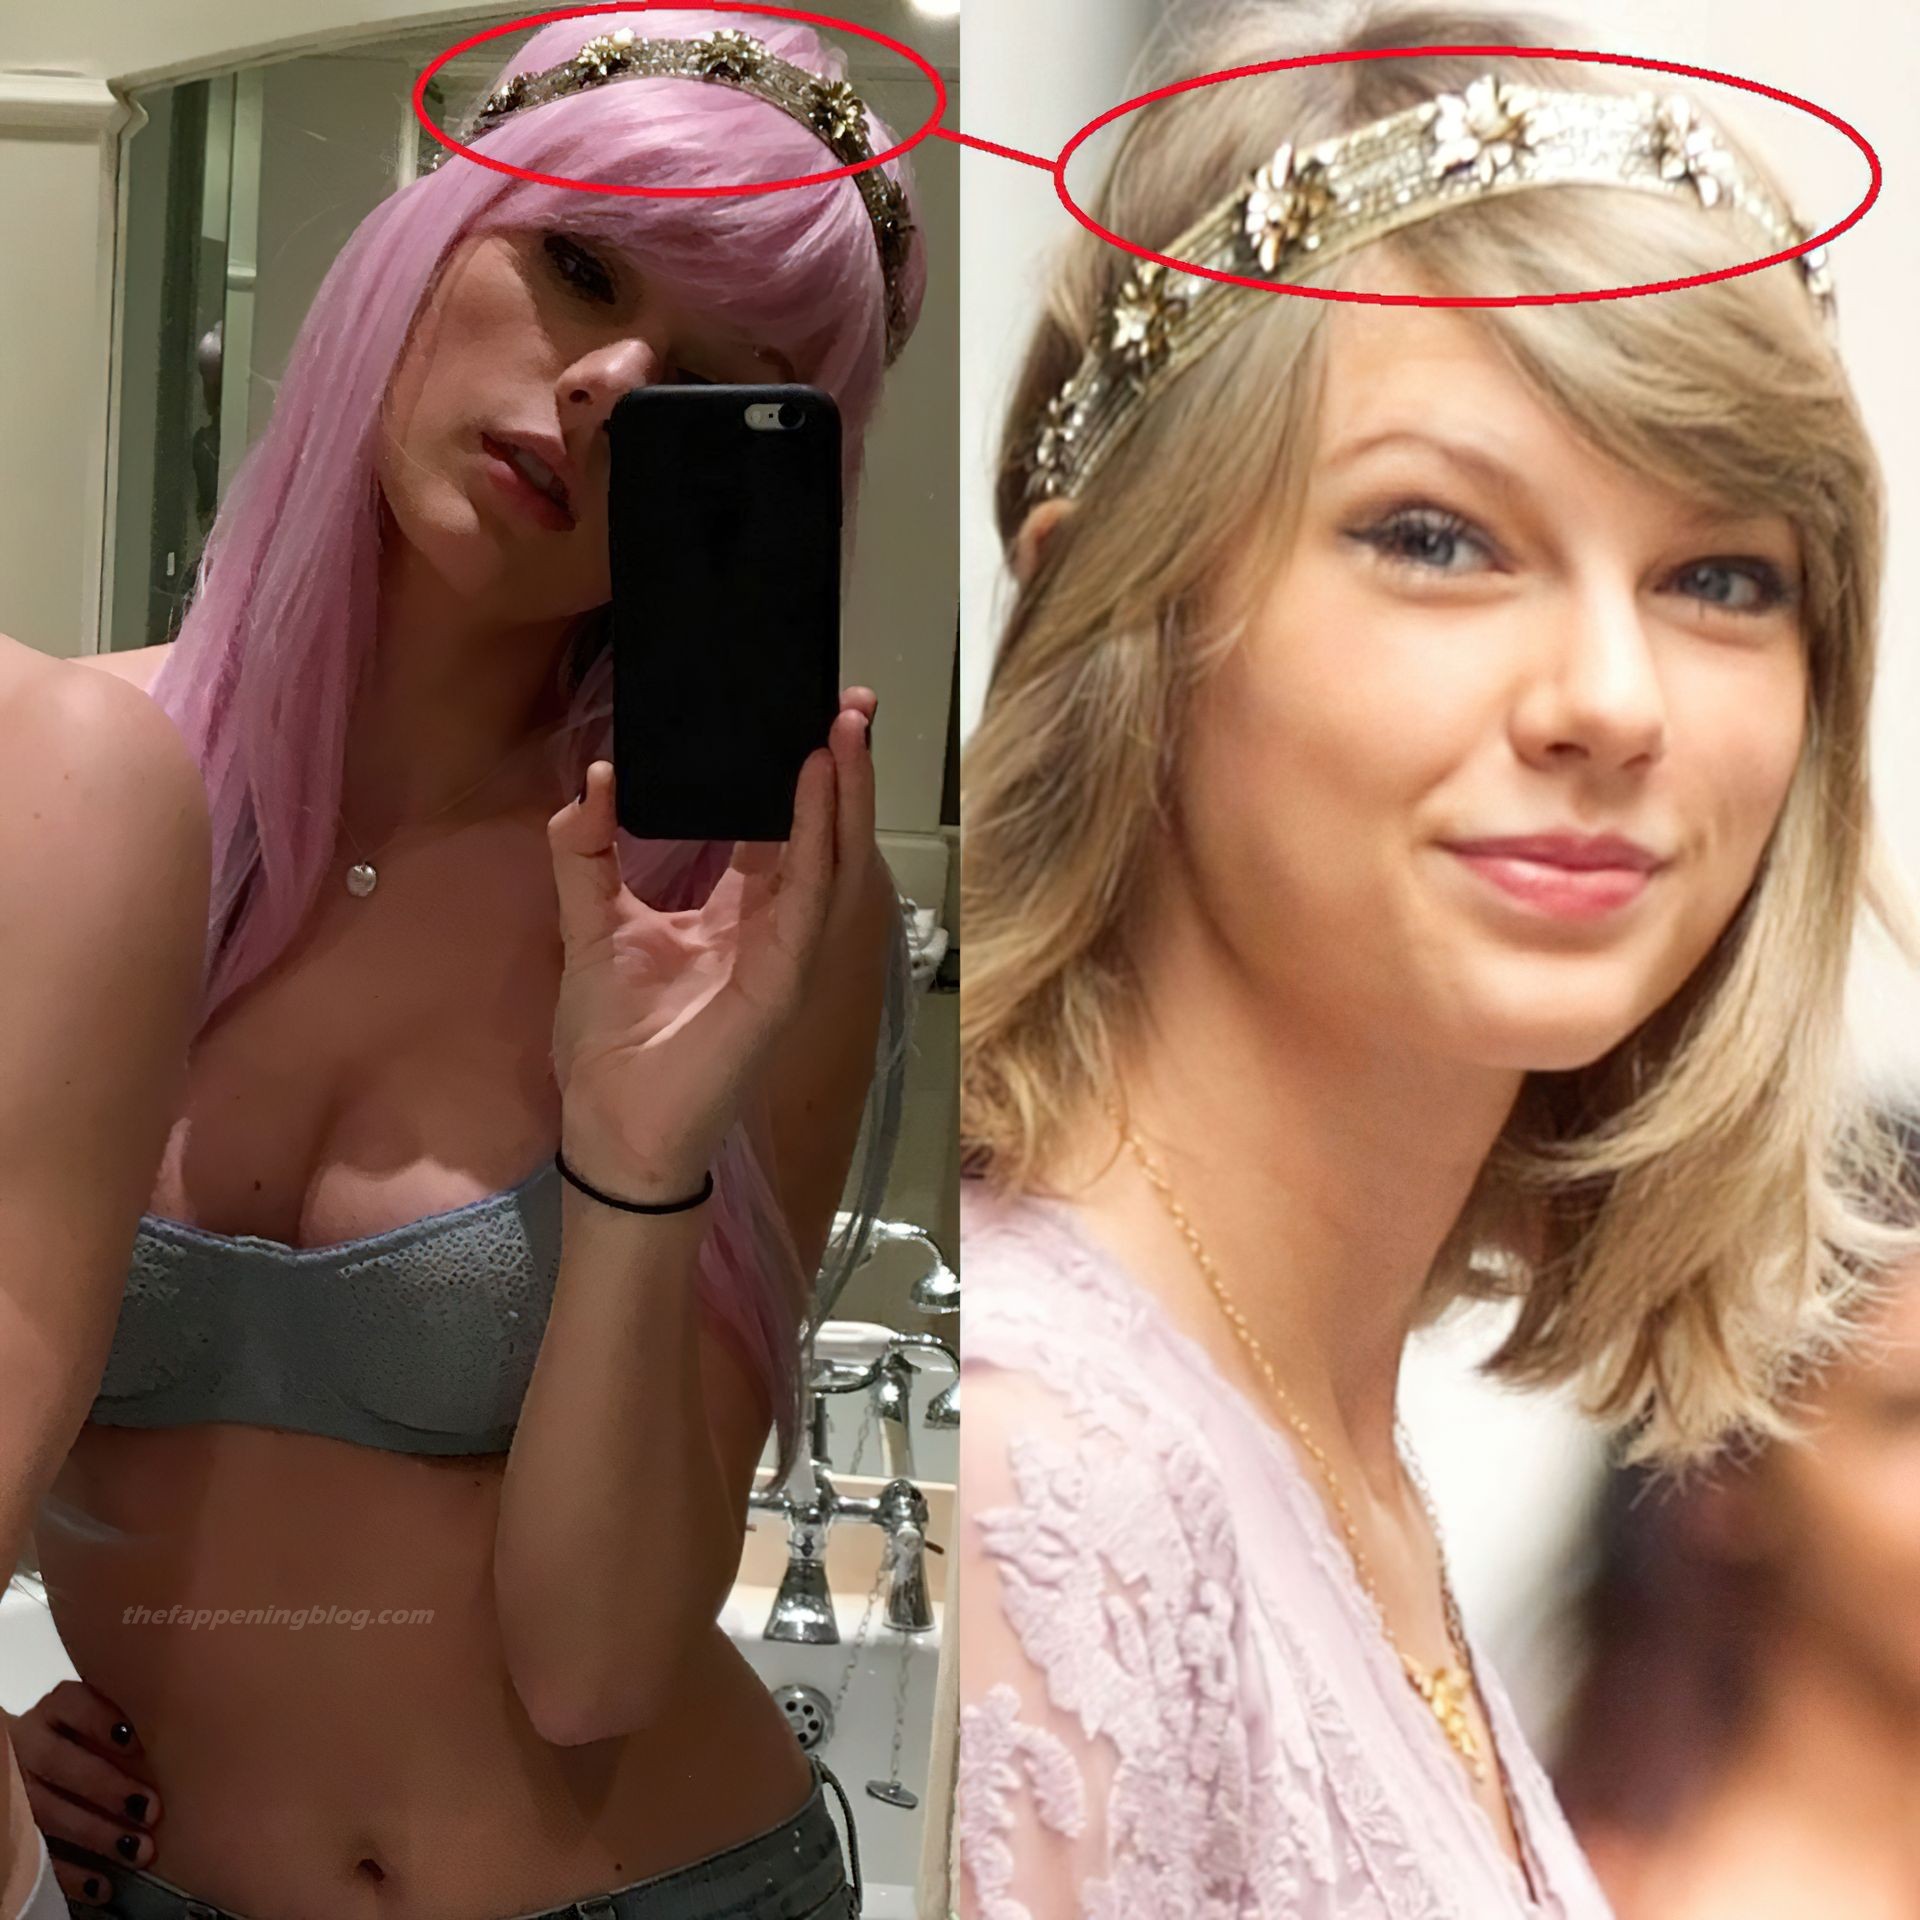 Taylor swift photo leaks